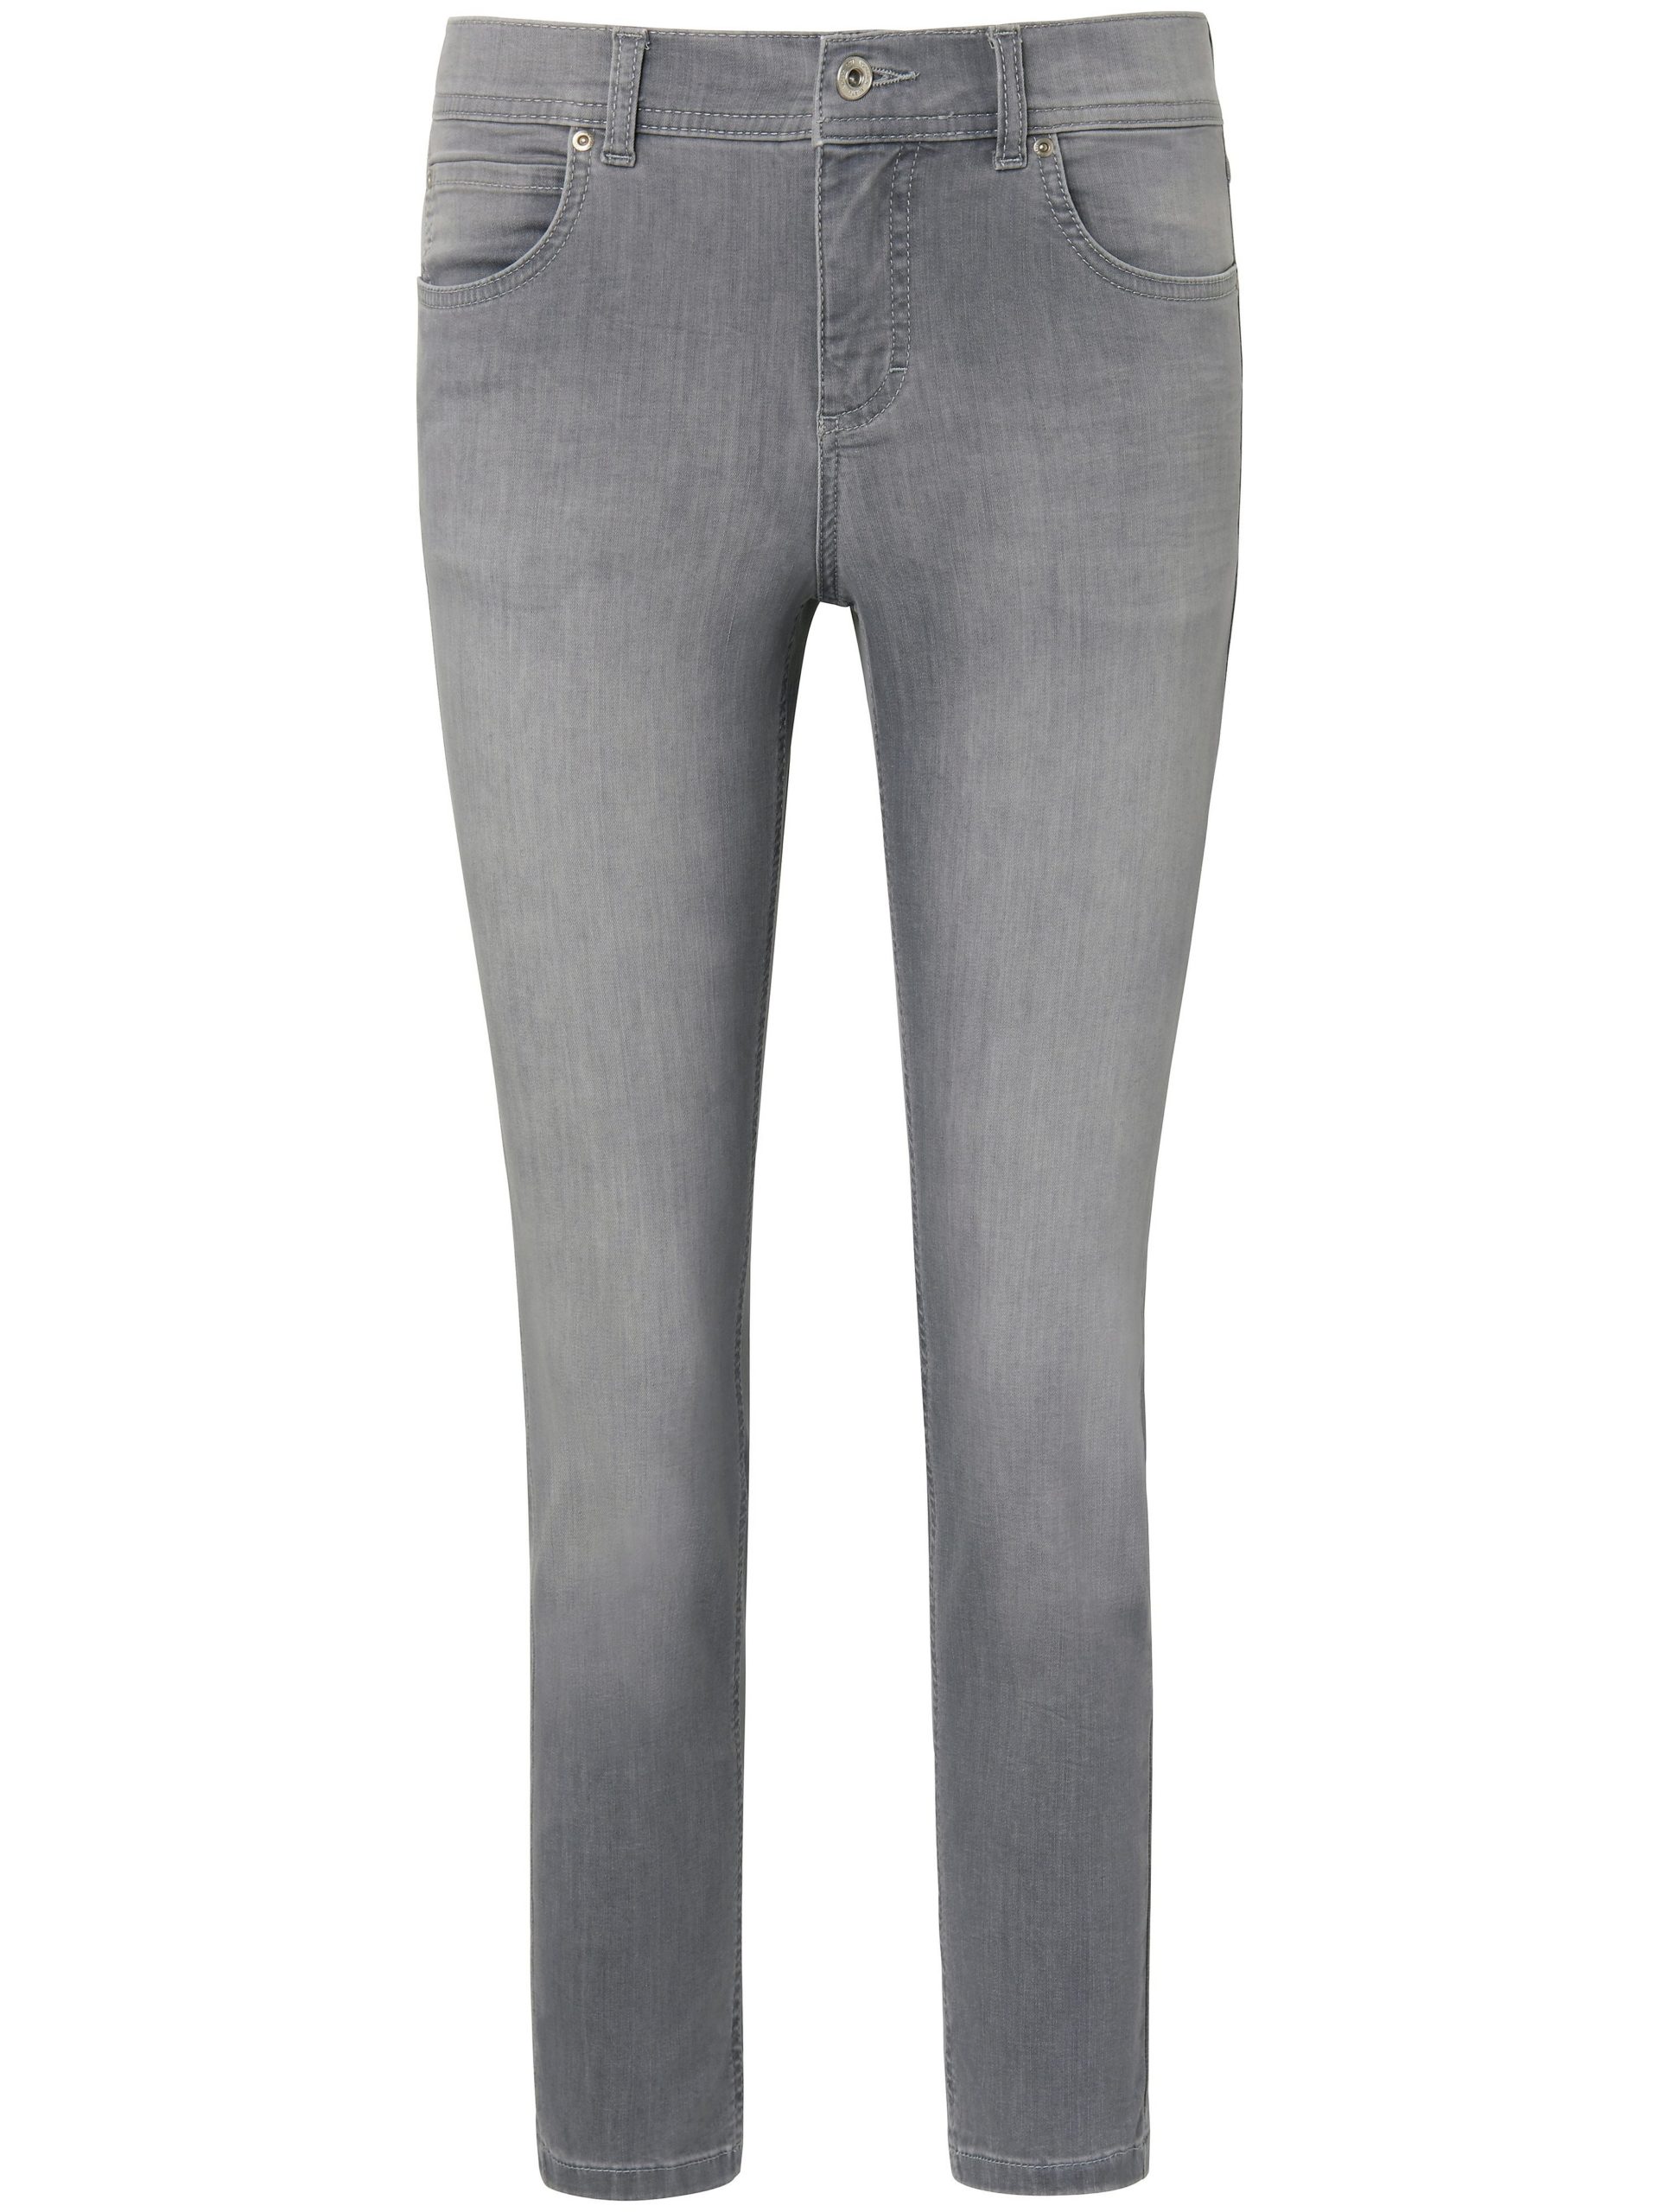 Jeans model Ornella met iets kortere pijpen Van ANGELS denim Kopen